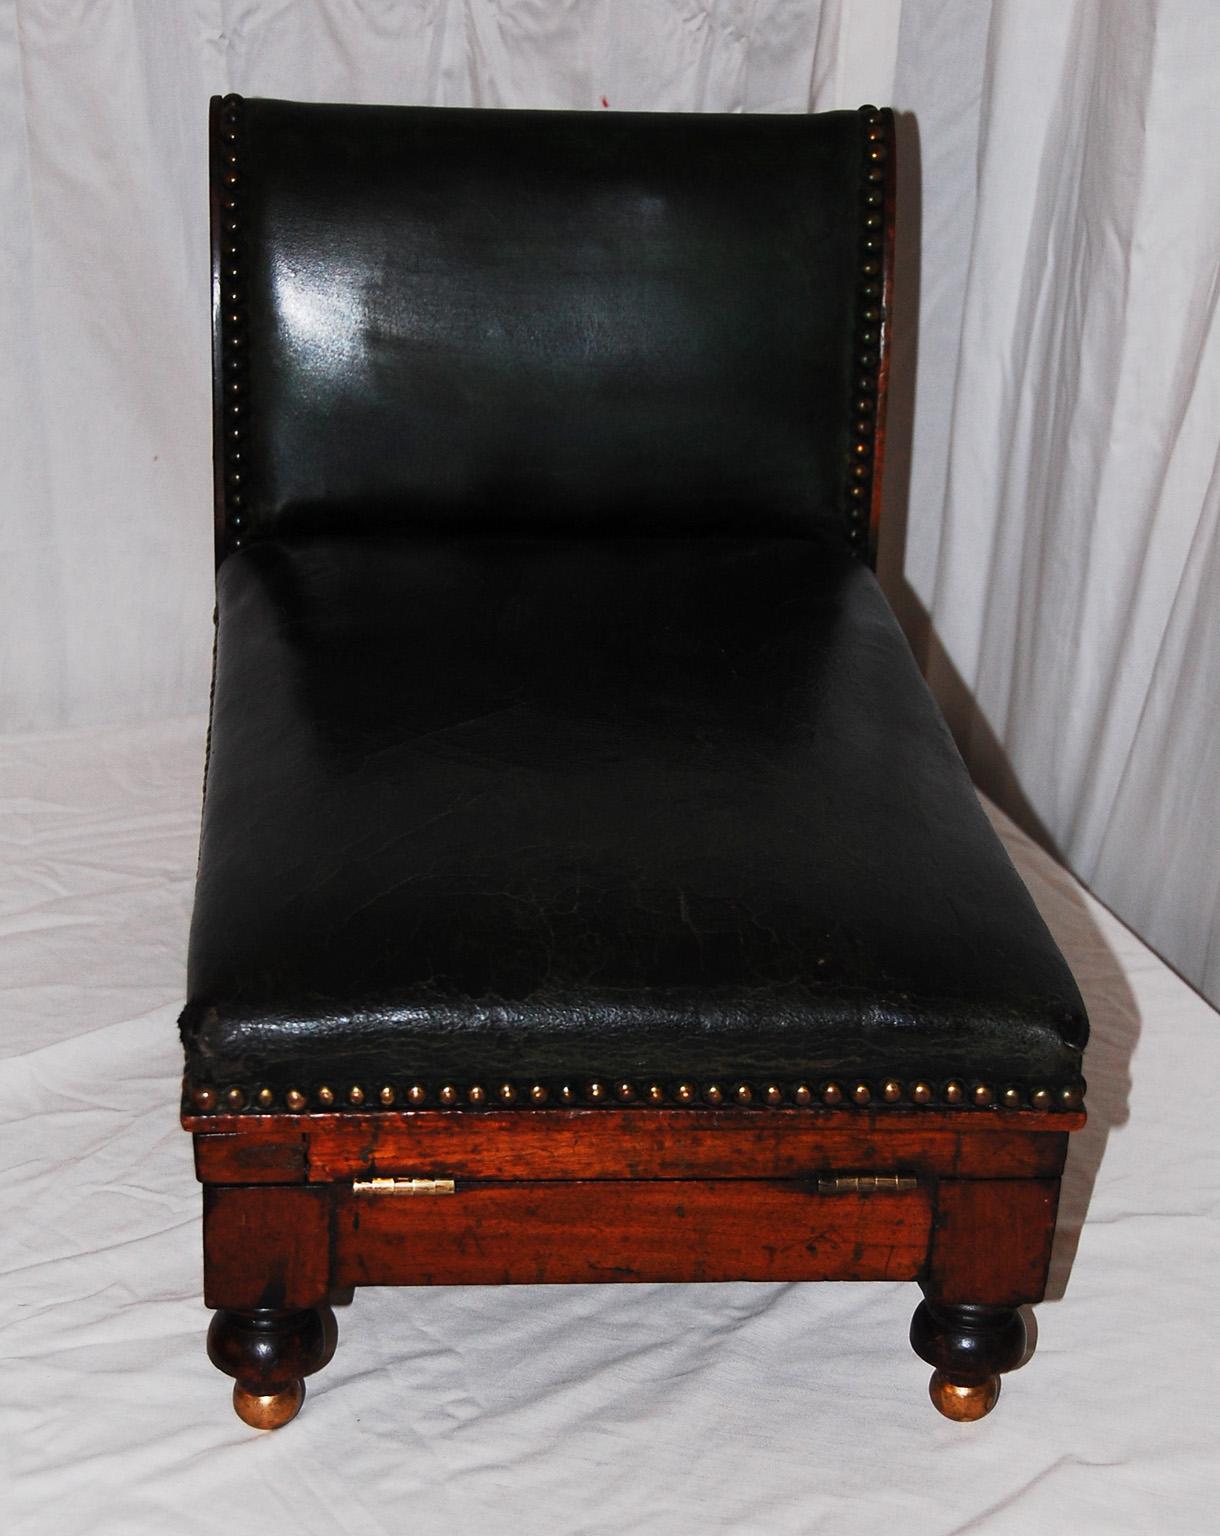 gout stool antique